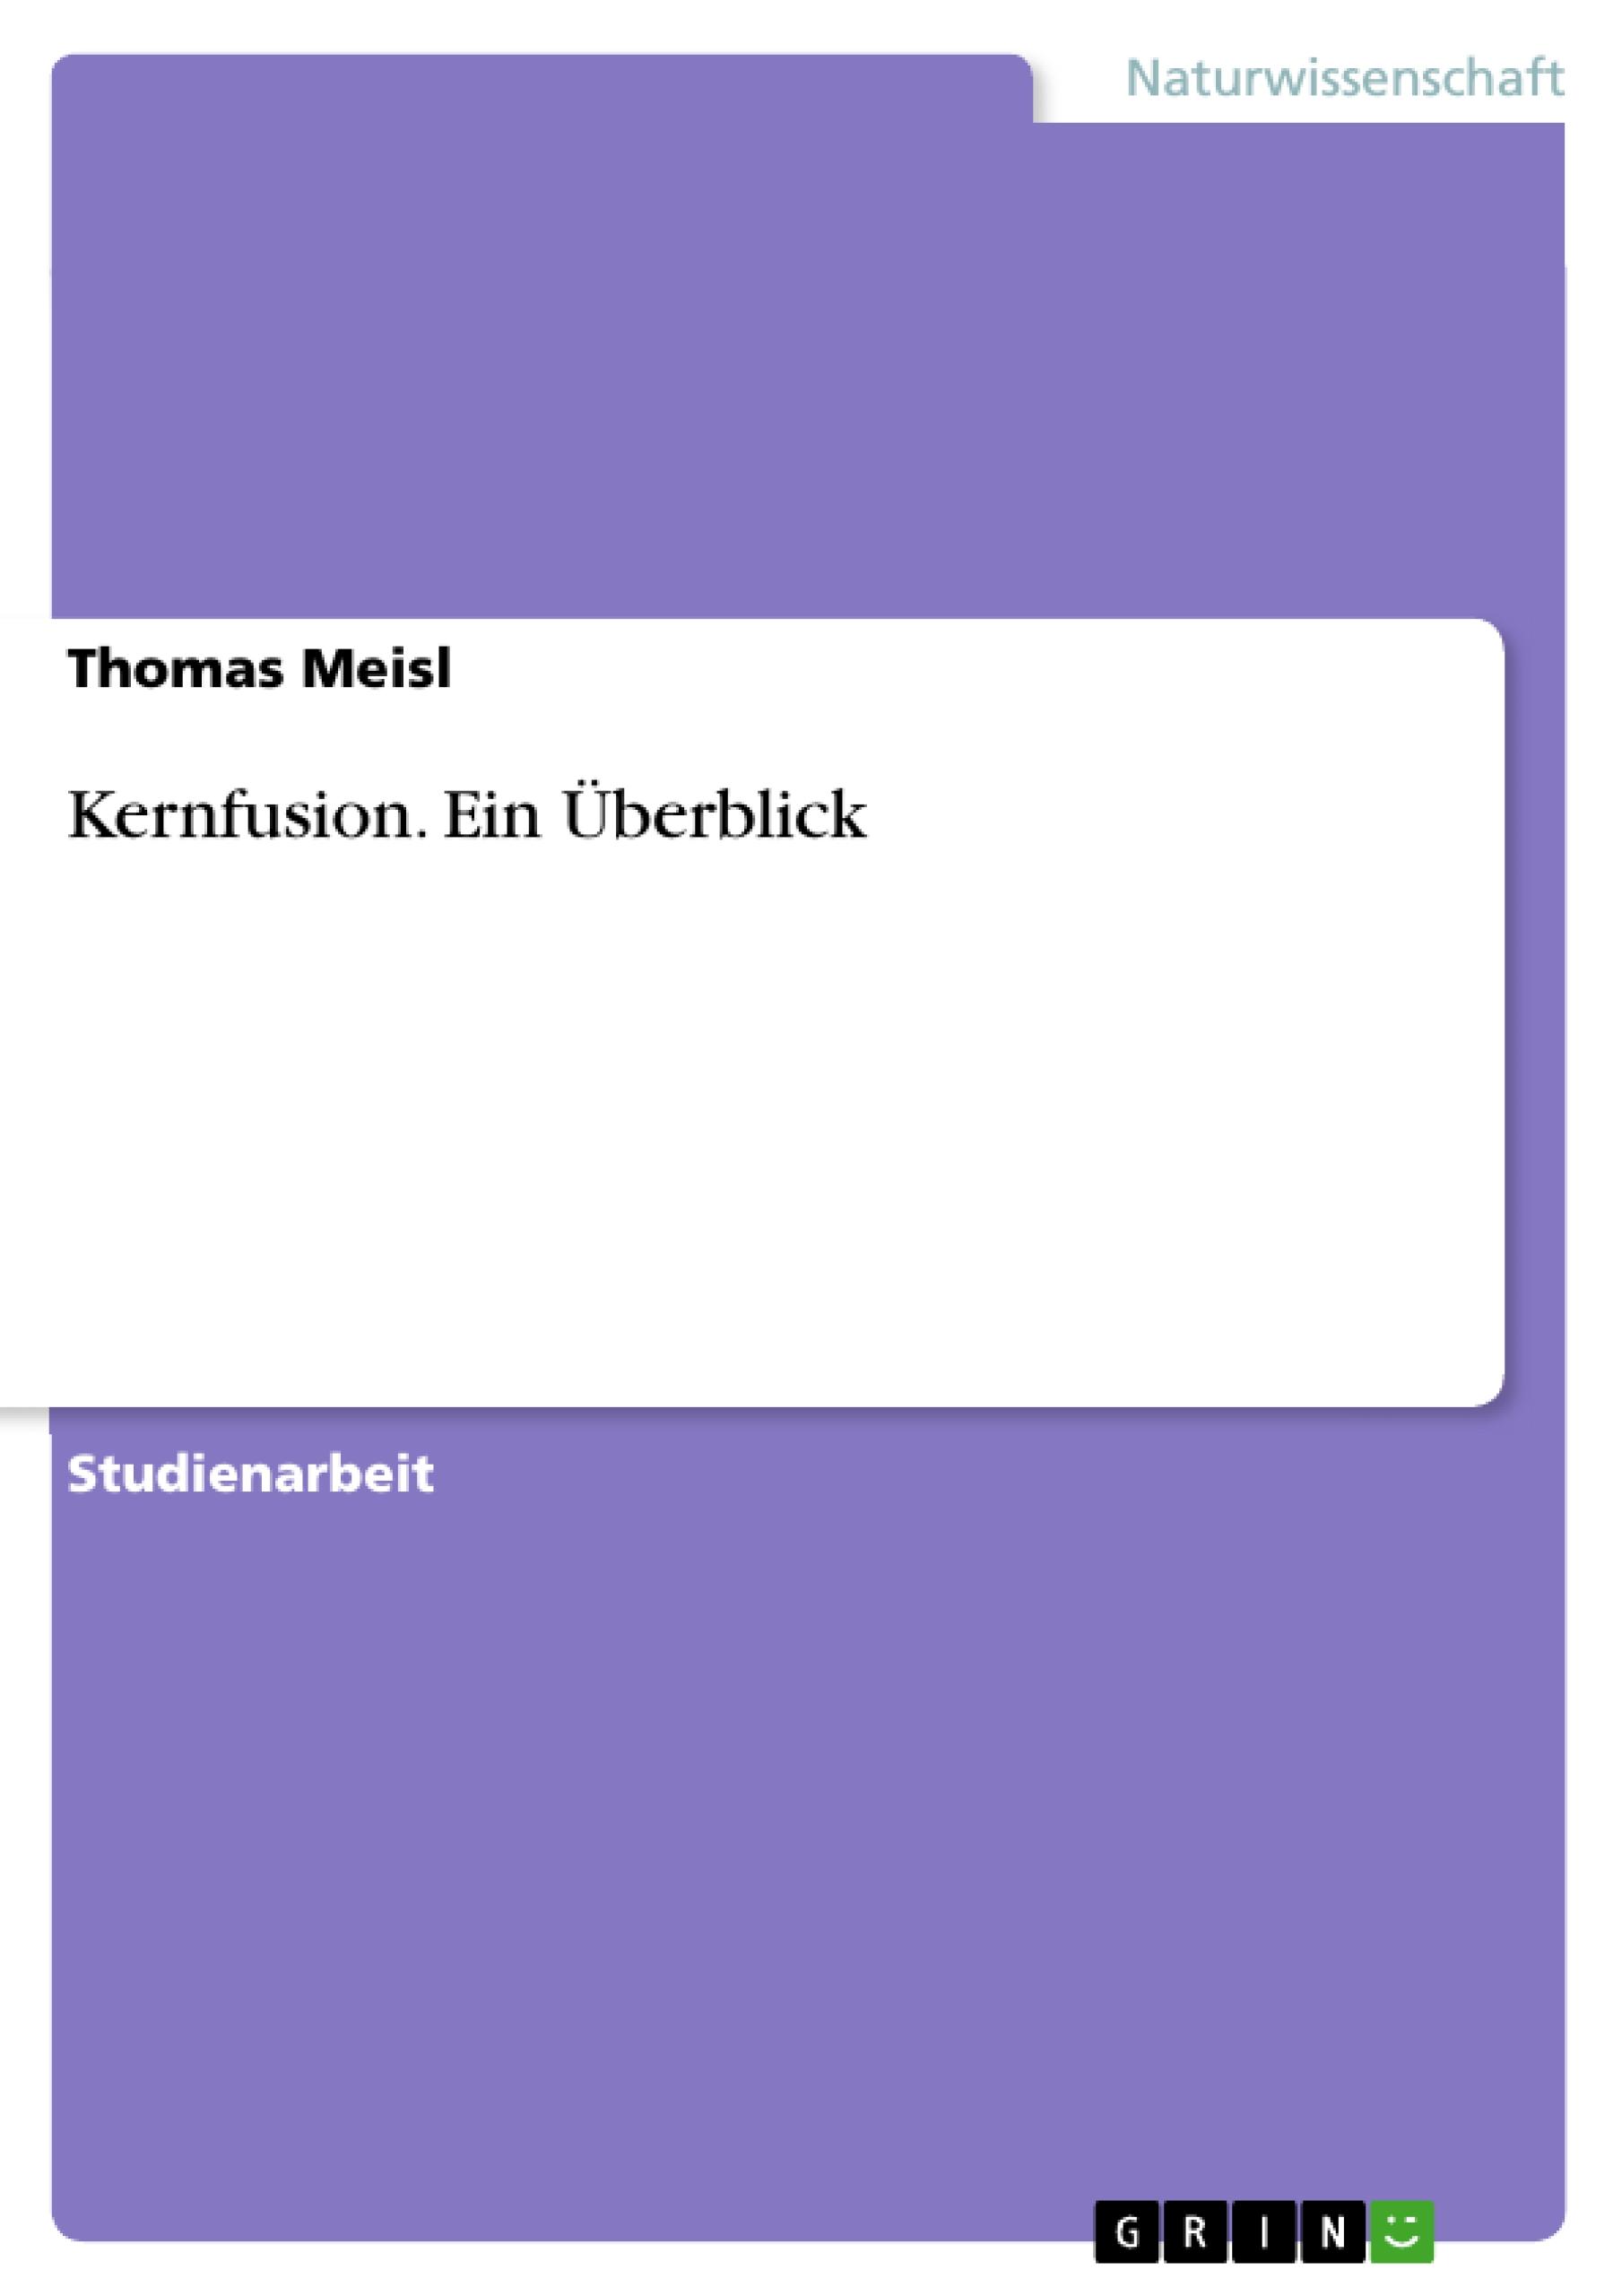 Kernfusion. Ein Überblick / Thomas Meisl / Taschenbuch / Booklet / 20 S. / Deutsch / 2007 / GRIN Verlag / EAN 9783638760249 - Meisl, Thomas